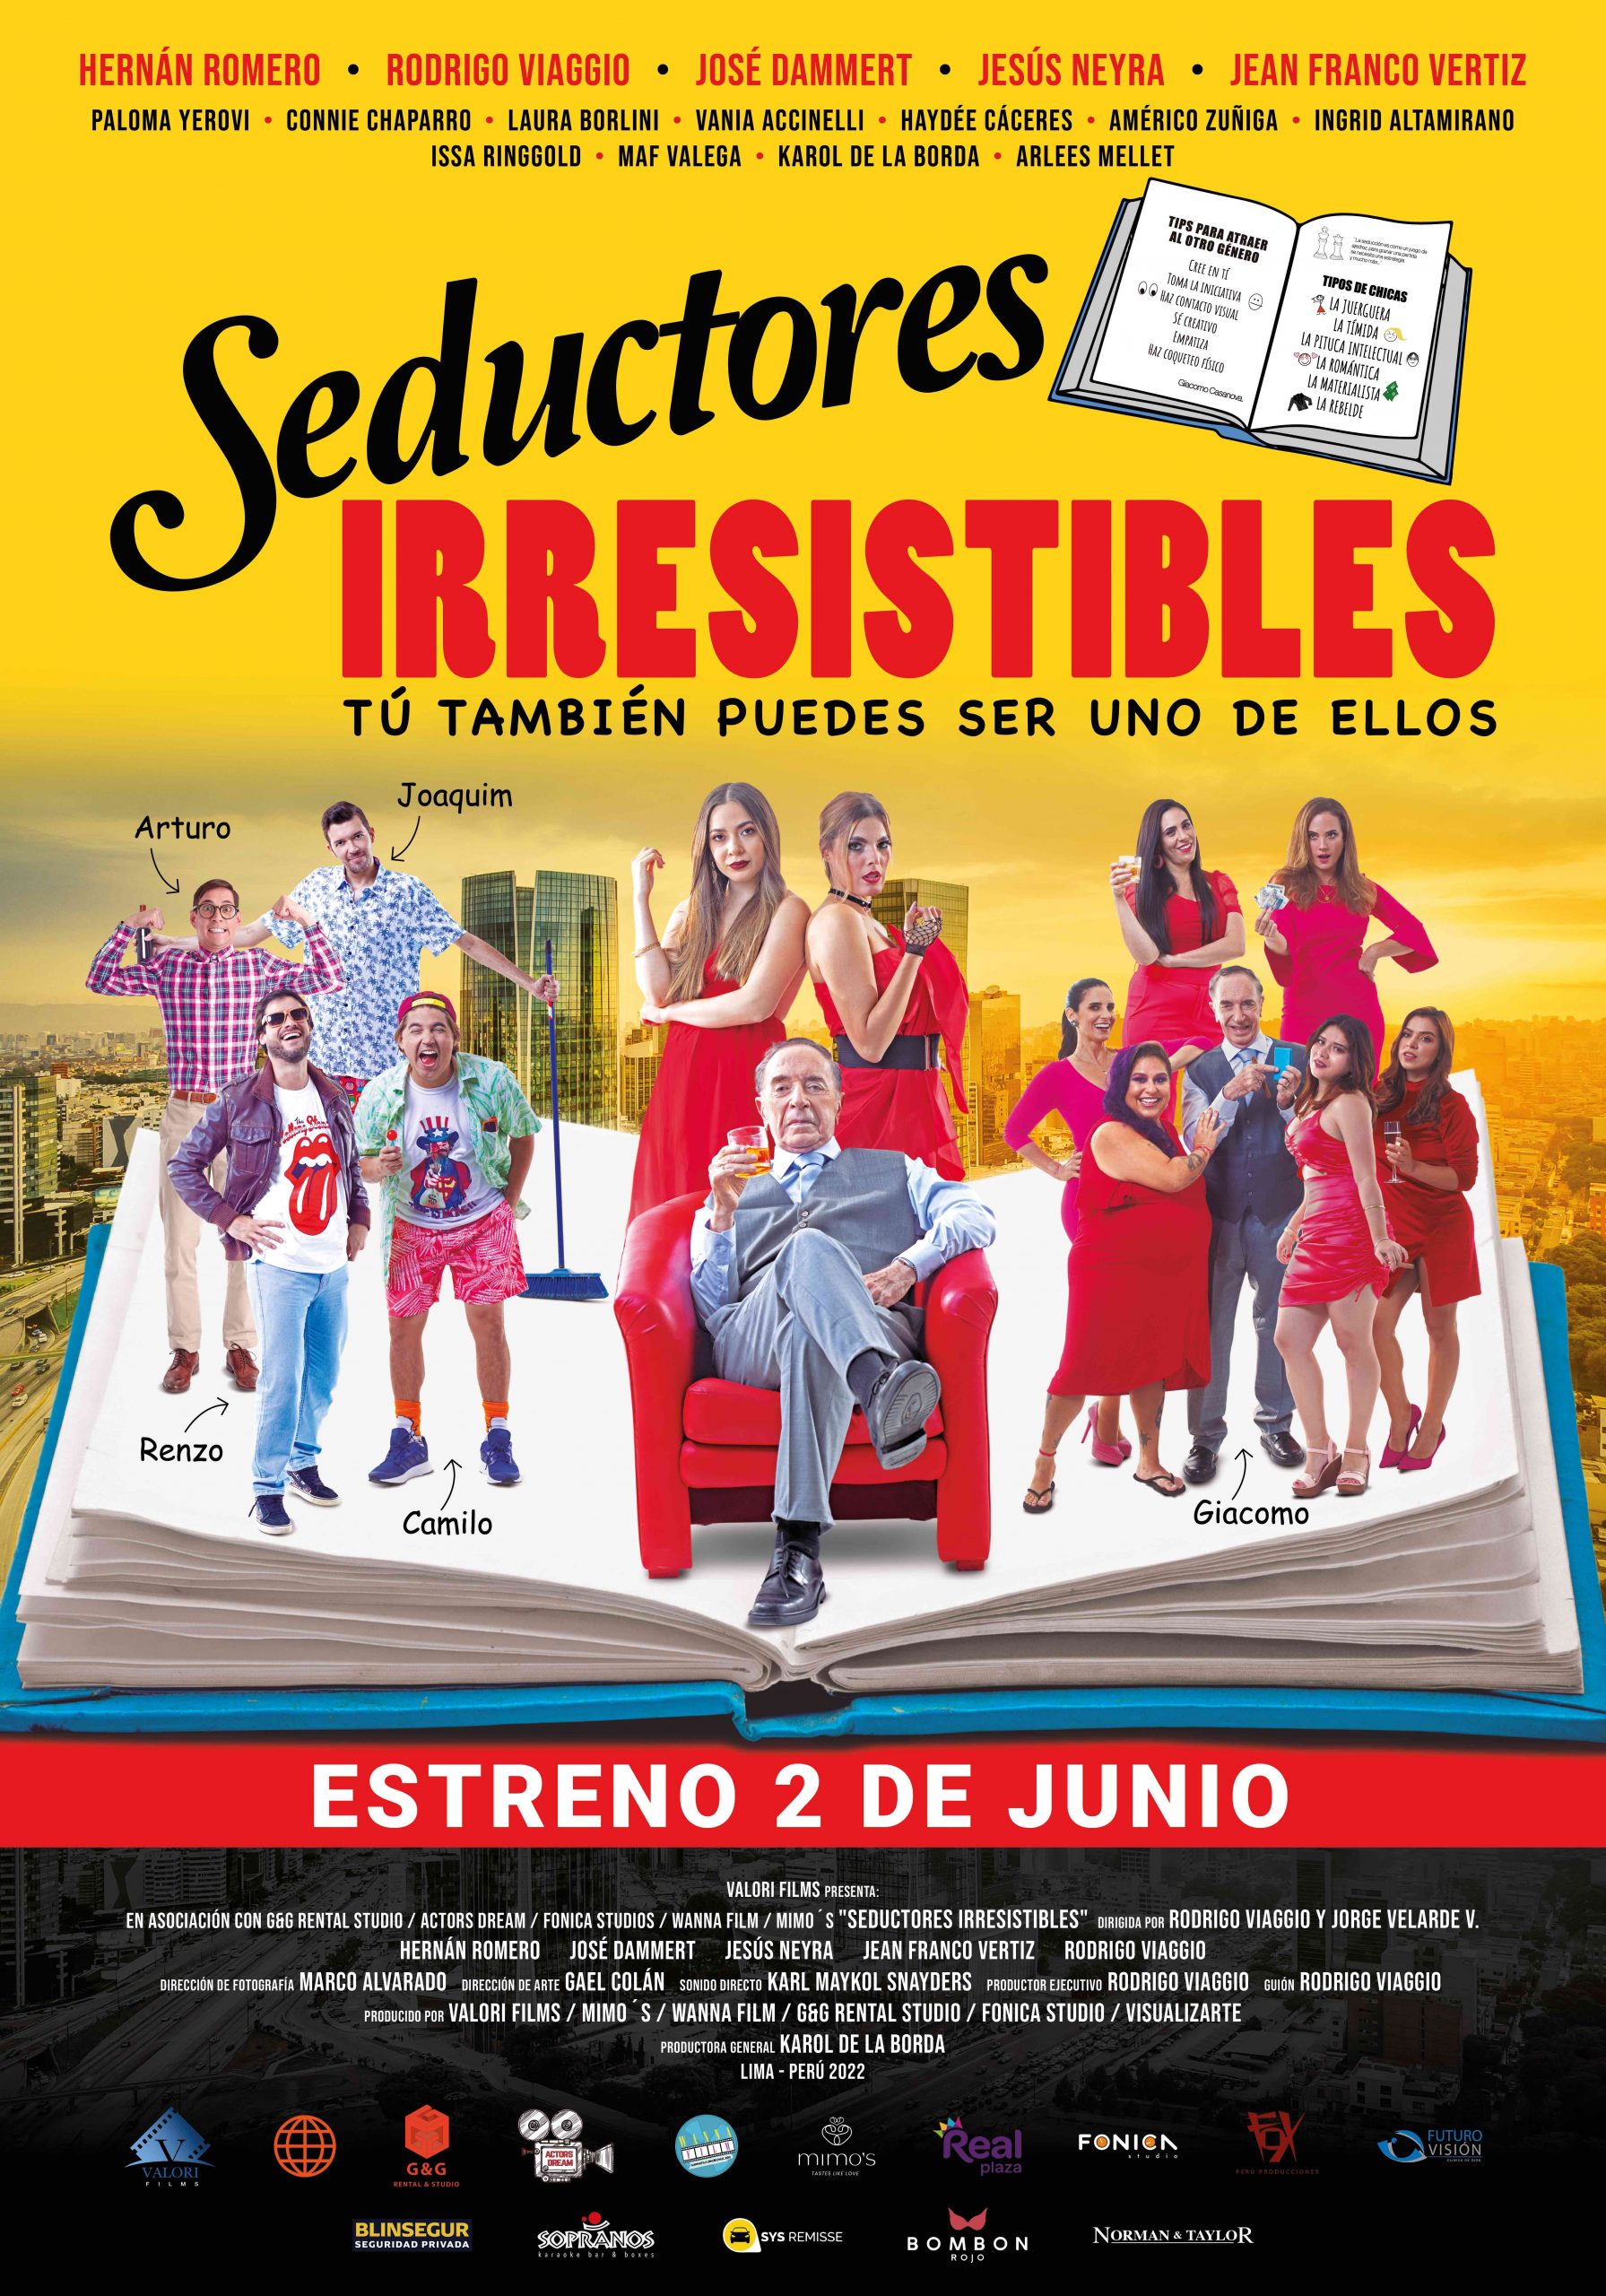 'Seductores Irresistibles': Tráiler y afiche de la película protagonizada por Hernán Romero